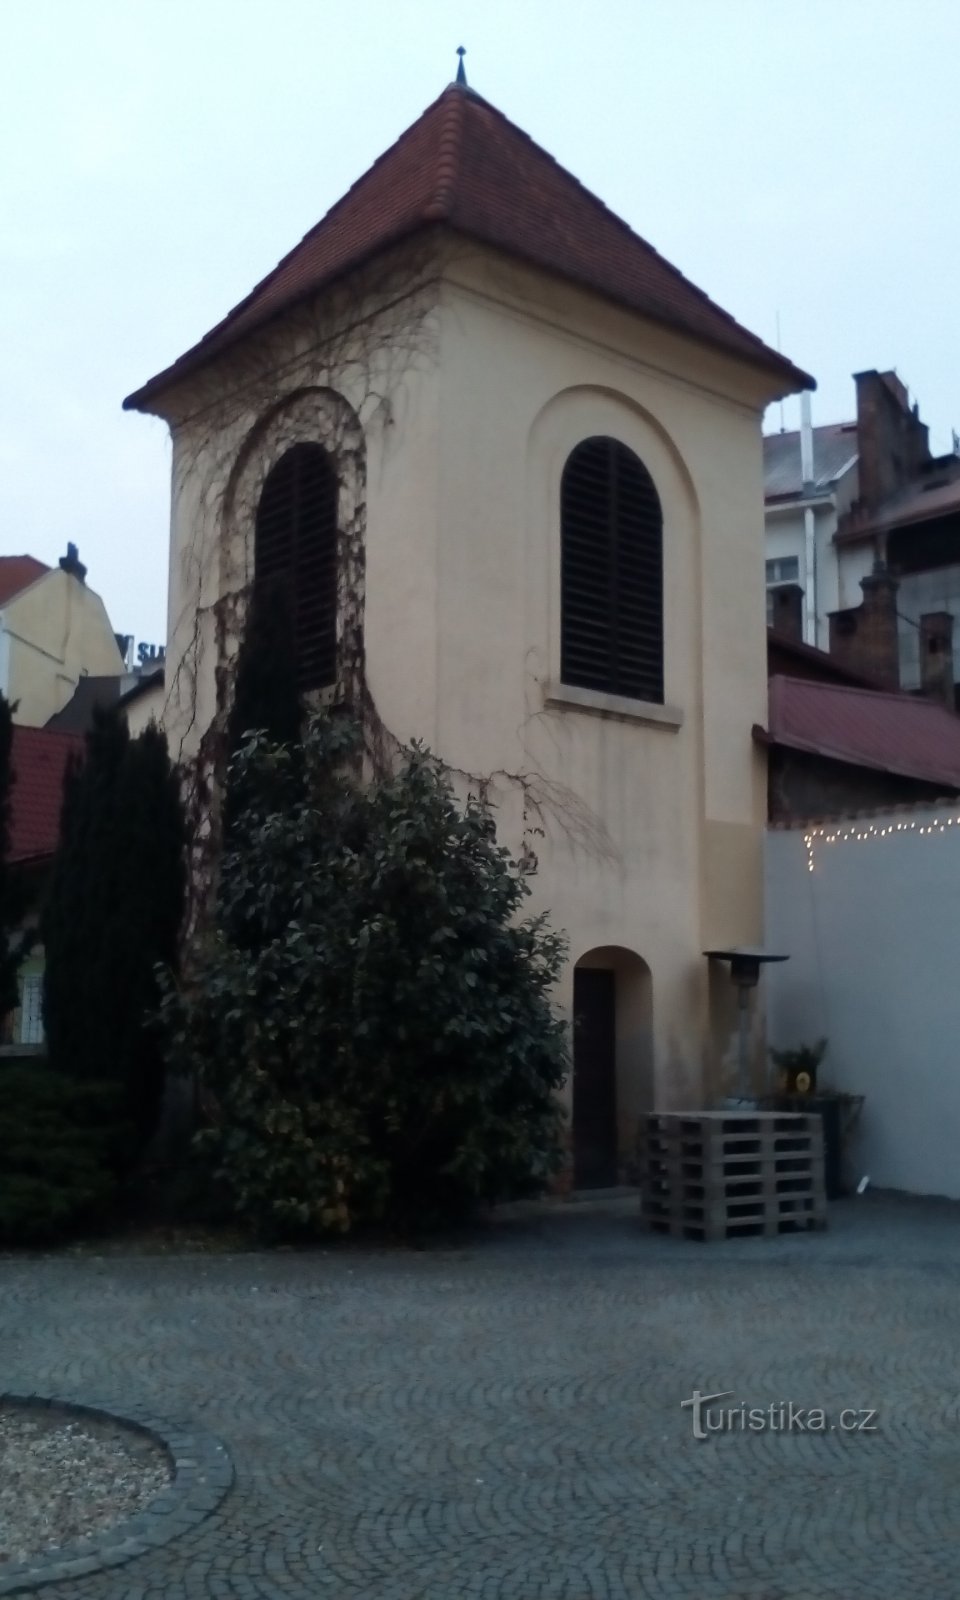 Tháp chuông ở nhà thờ thánh Gioan Baotixita.